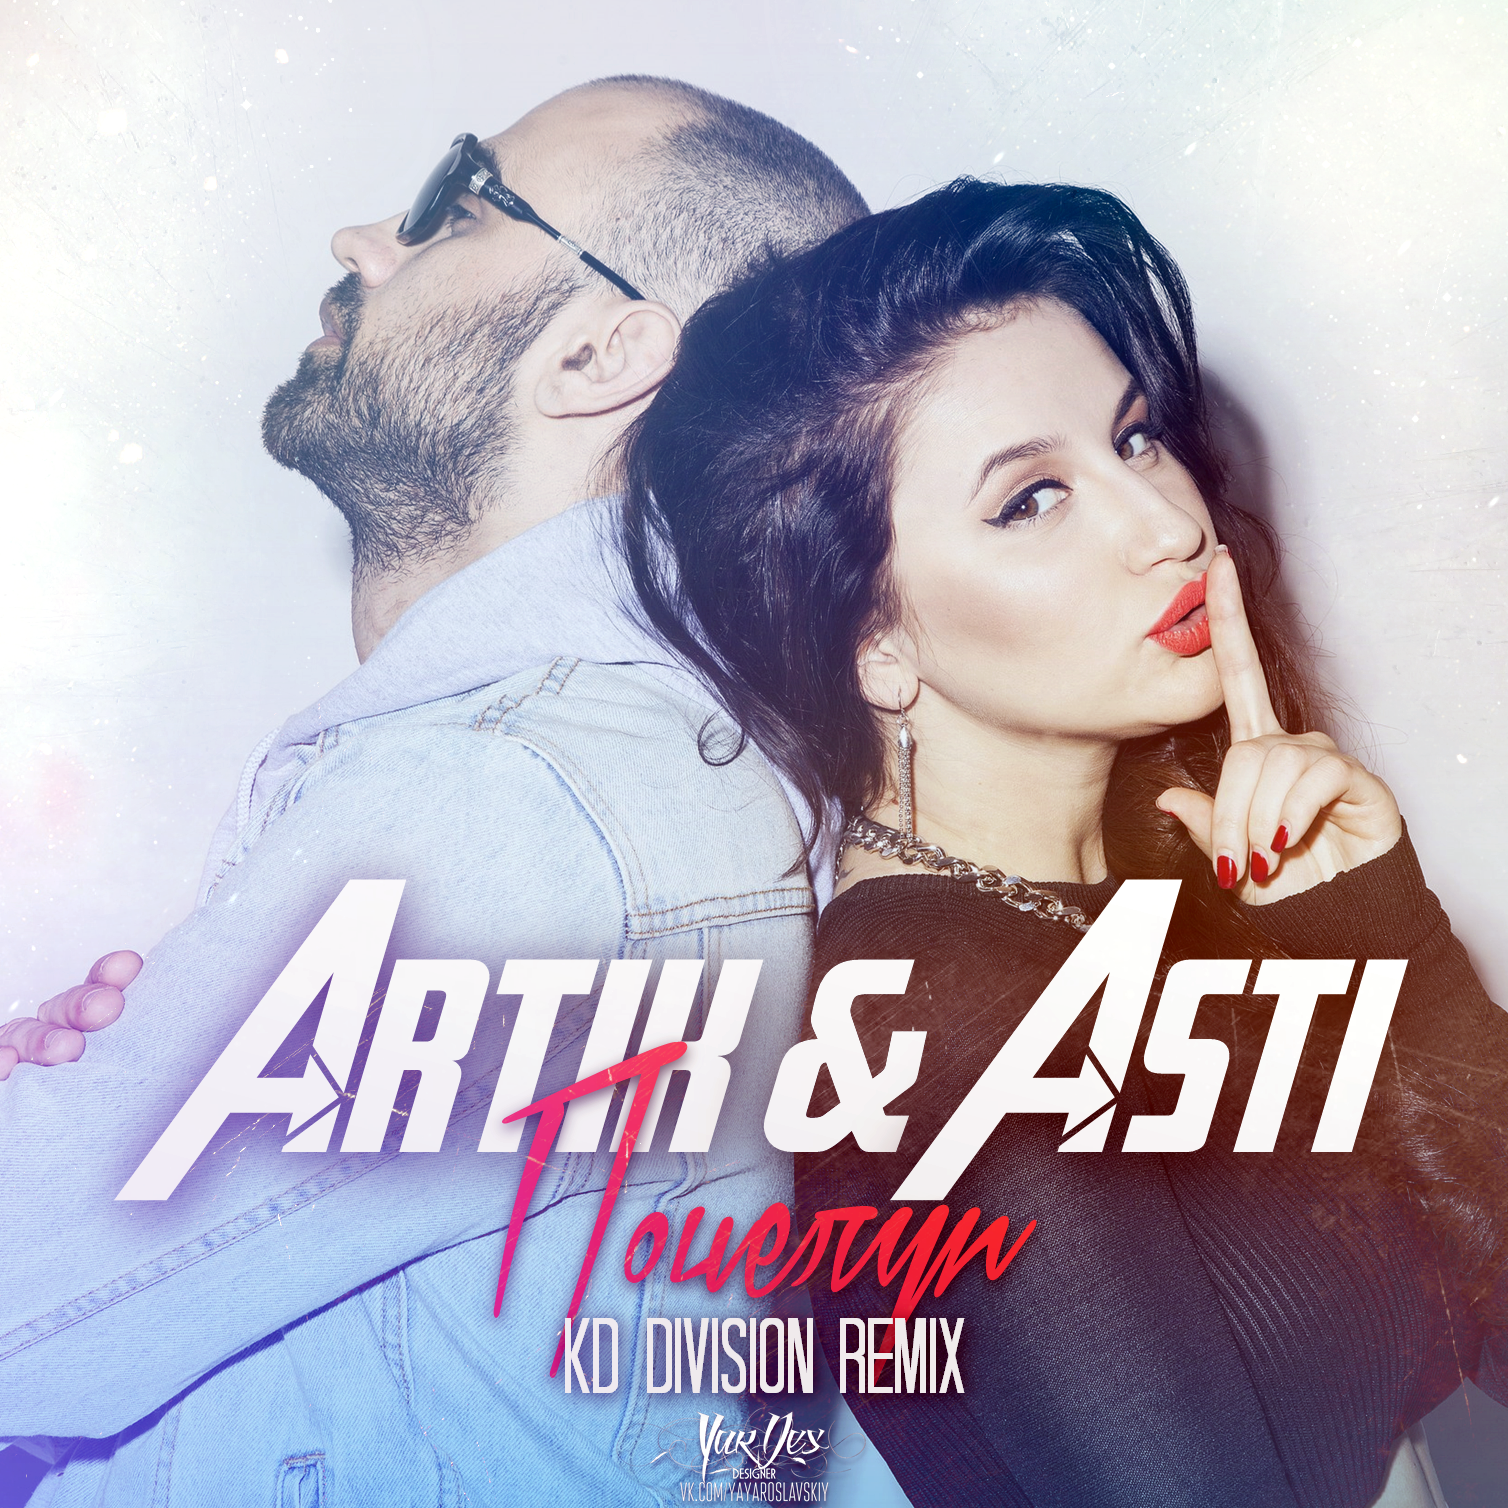 Асти старые песни слушать. Группа artik & Asti. Группа artik & Asti альбомы. Artik Asti обложка. Артик и Асти 2015 год.